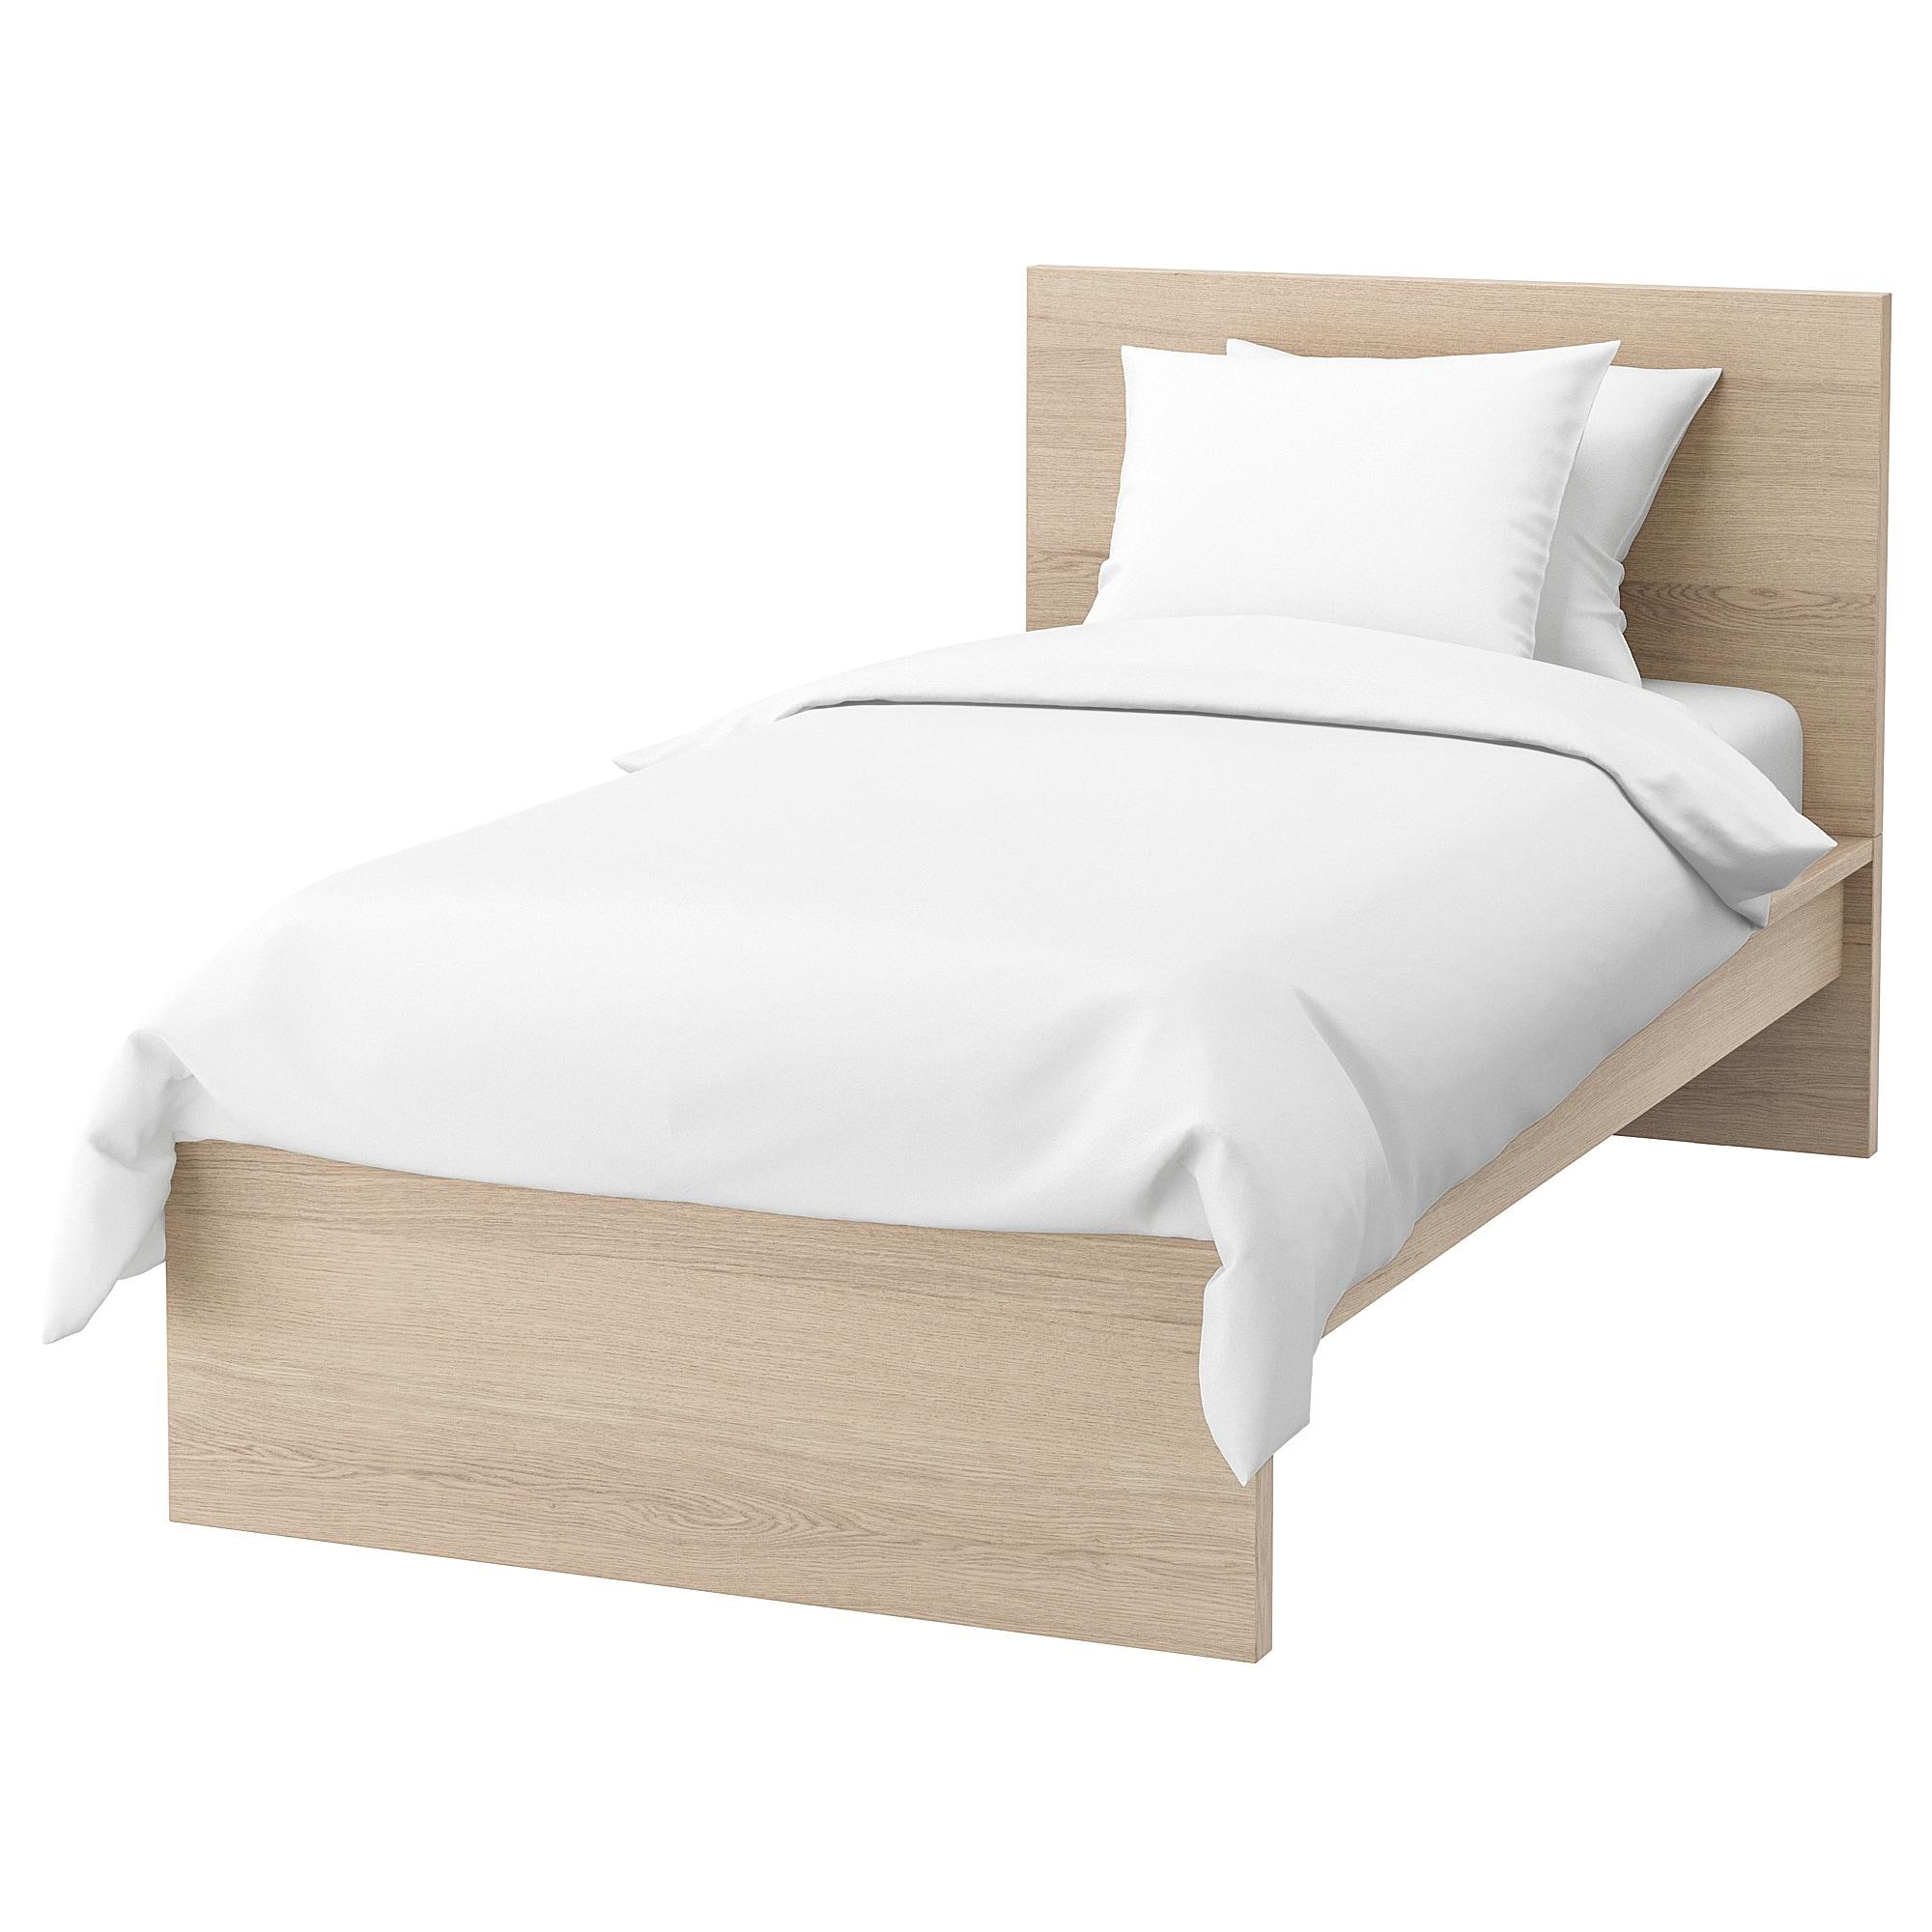 МАЛЬМ Каркас ліжка, високий - білий вітражний шпон дуба / Lönset 90x200 см 1